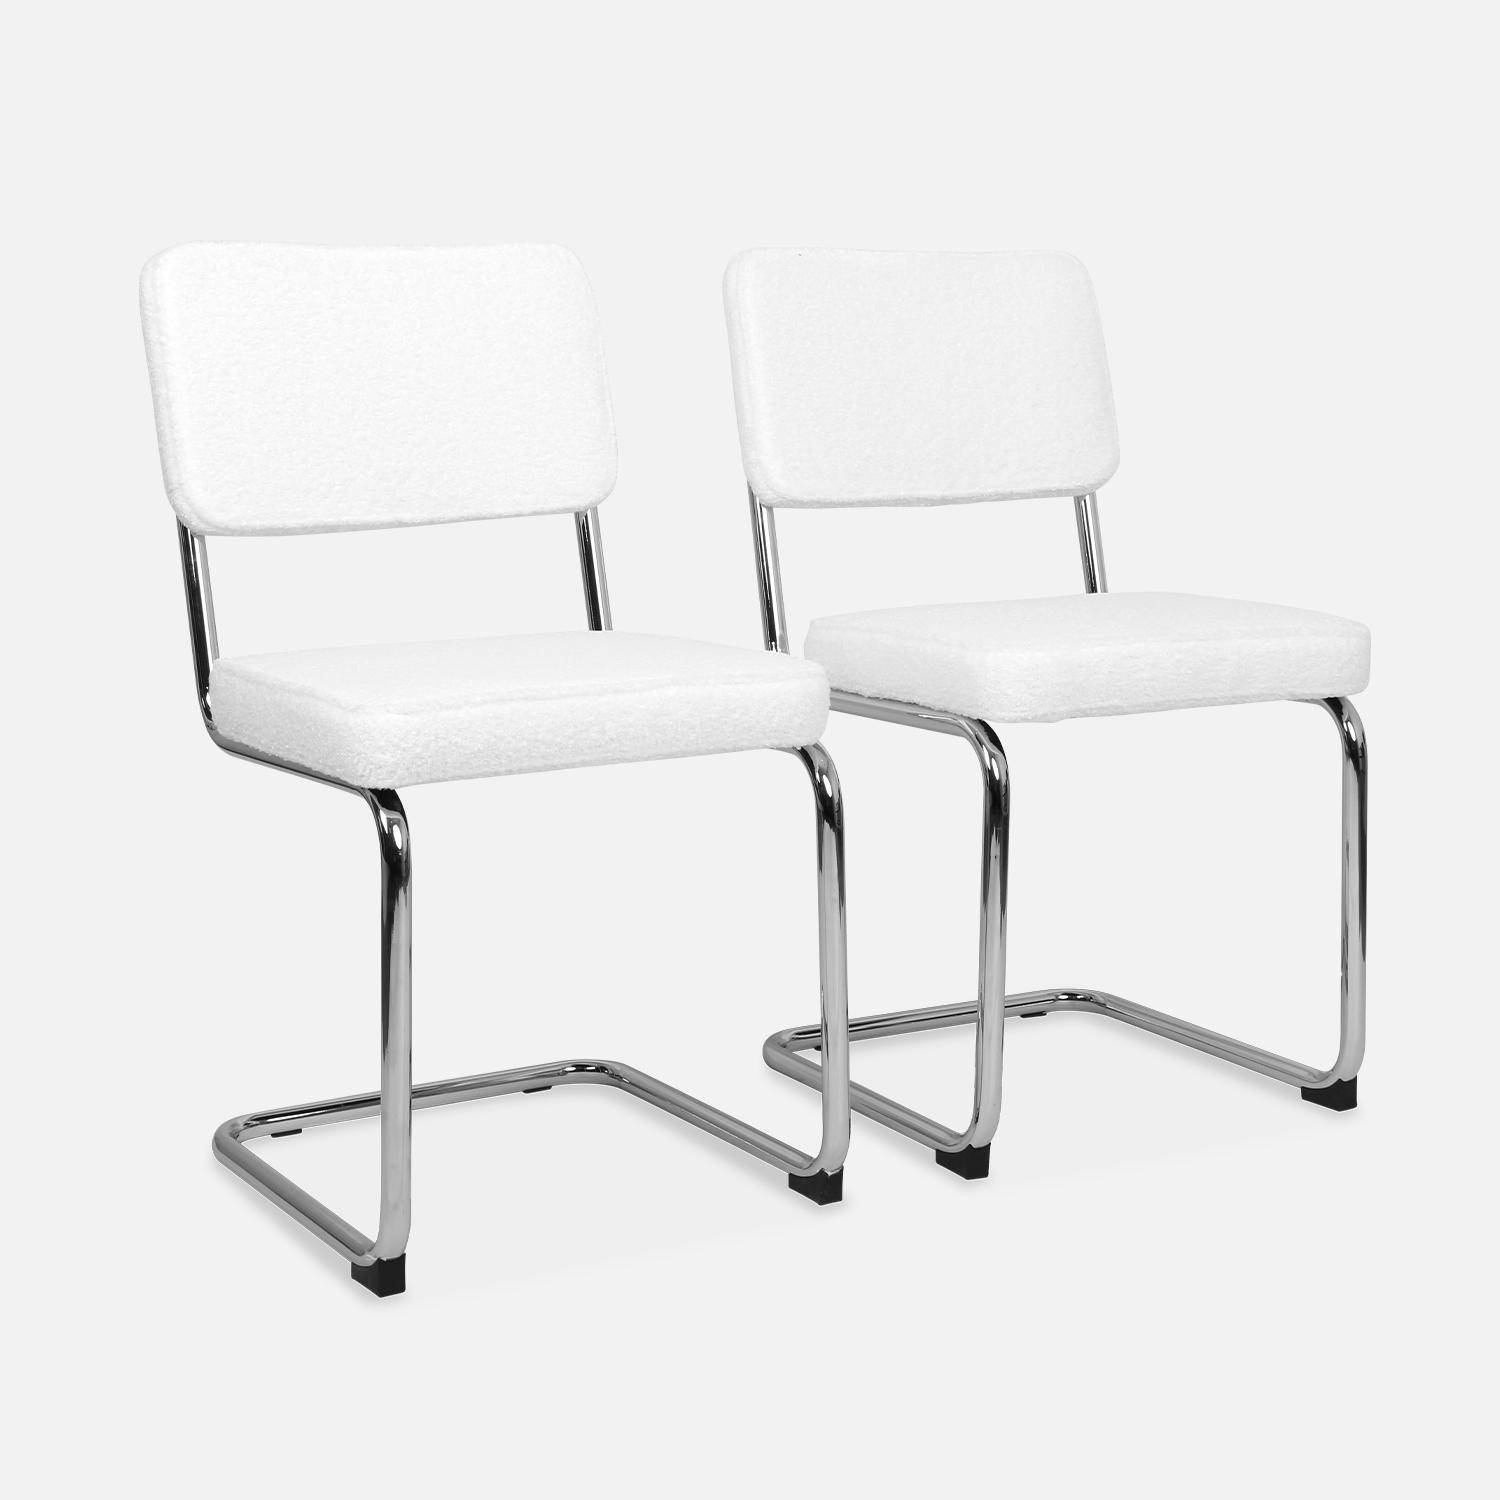 2 sillas voladizas - Maja - con rizos blancos, 46 x 54,5 x 84,5cm  ,sweeek,Photo4